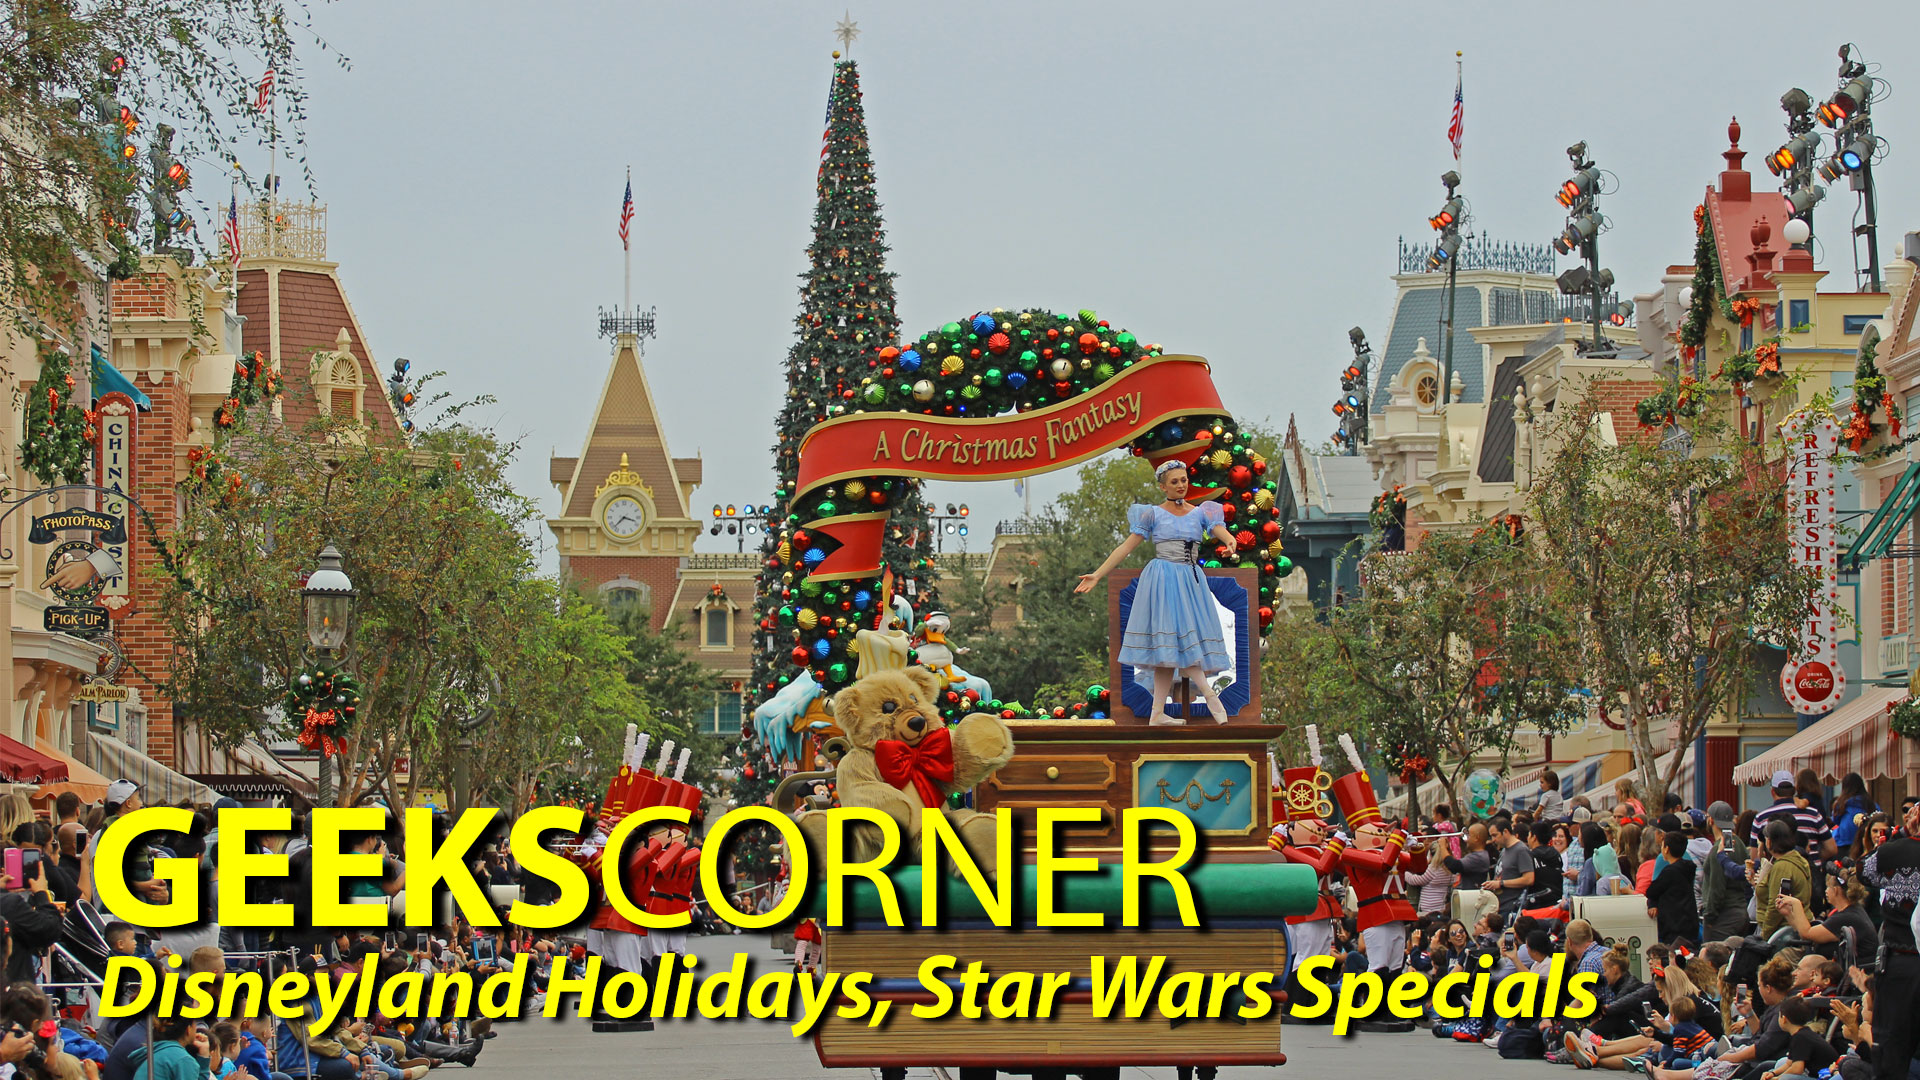 Disneyland Holidays, Star Wars Specials - GEEKS CORNER - Episode 807